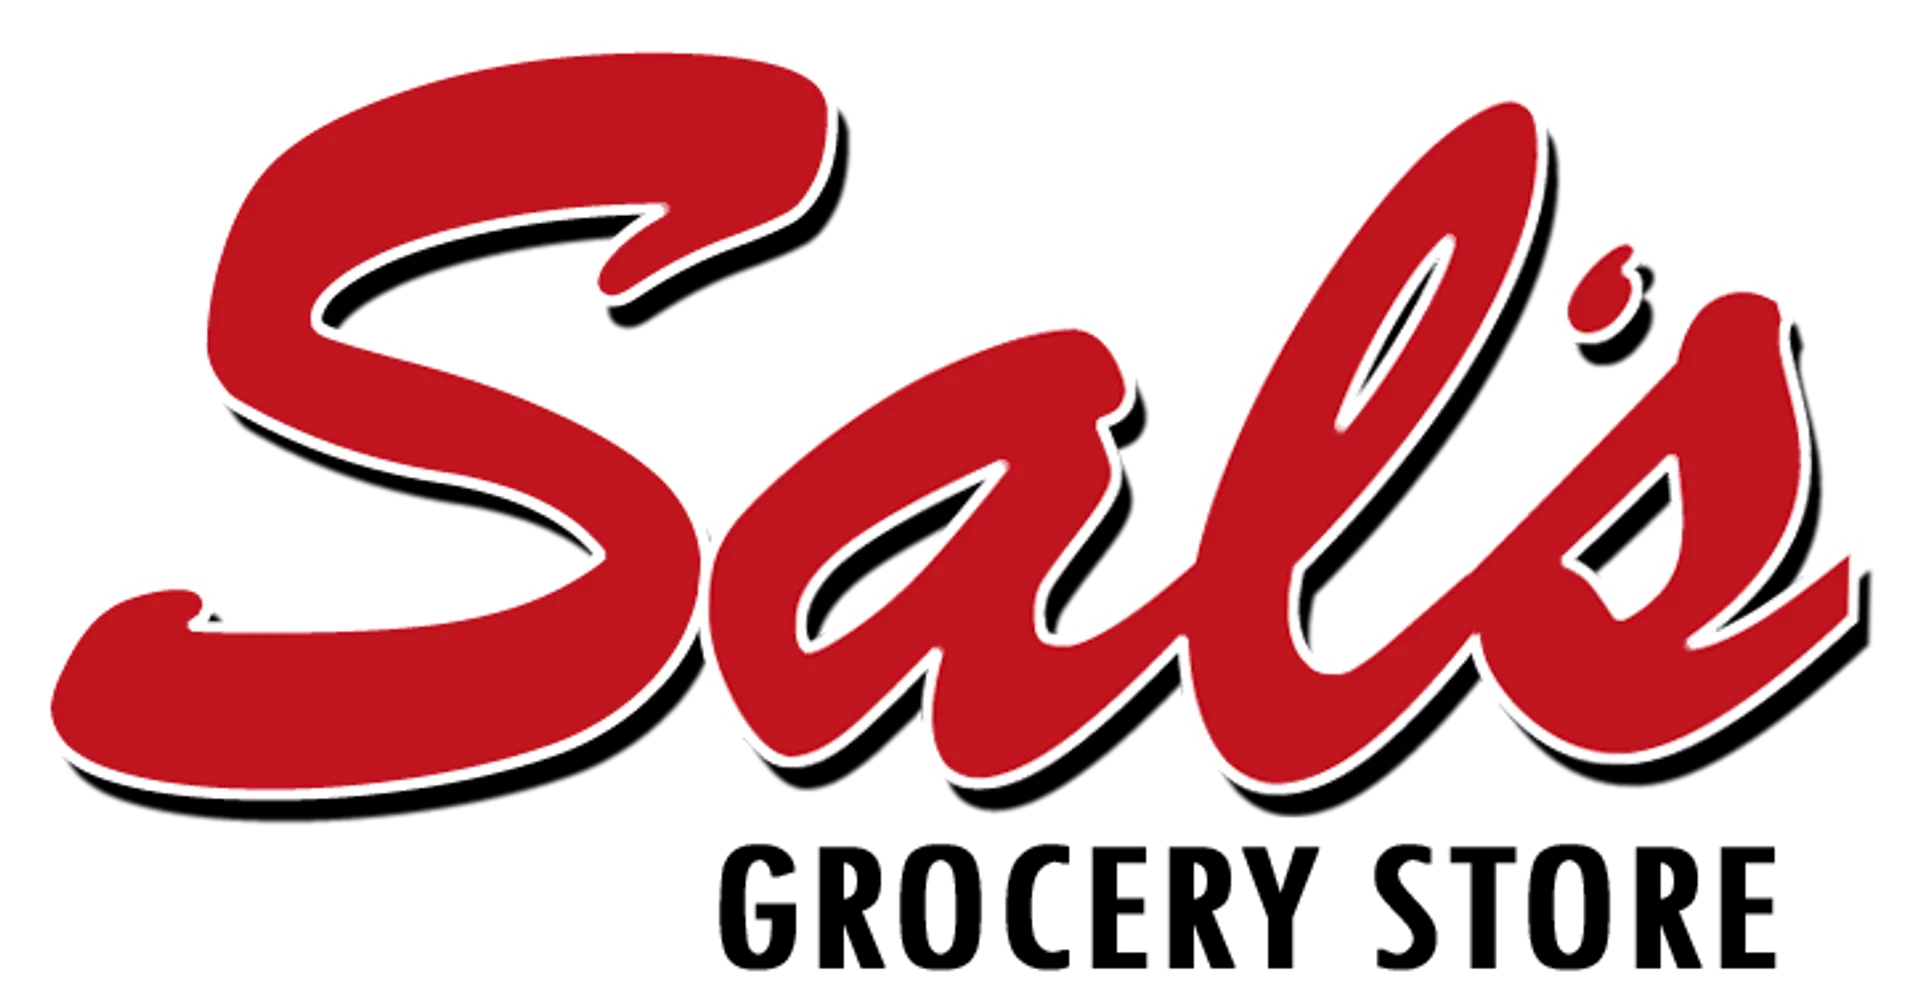 SAL'S GROCERY logo